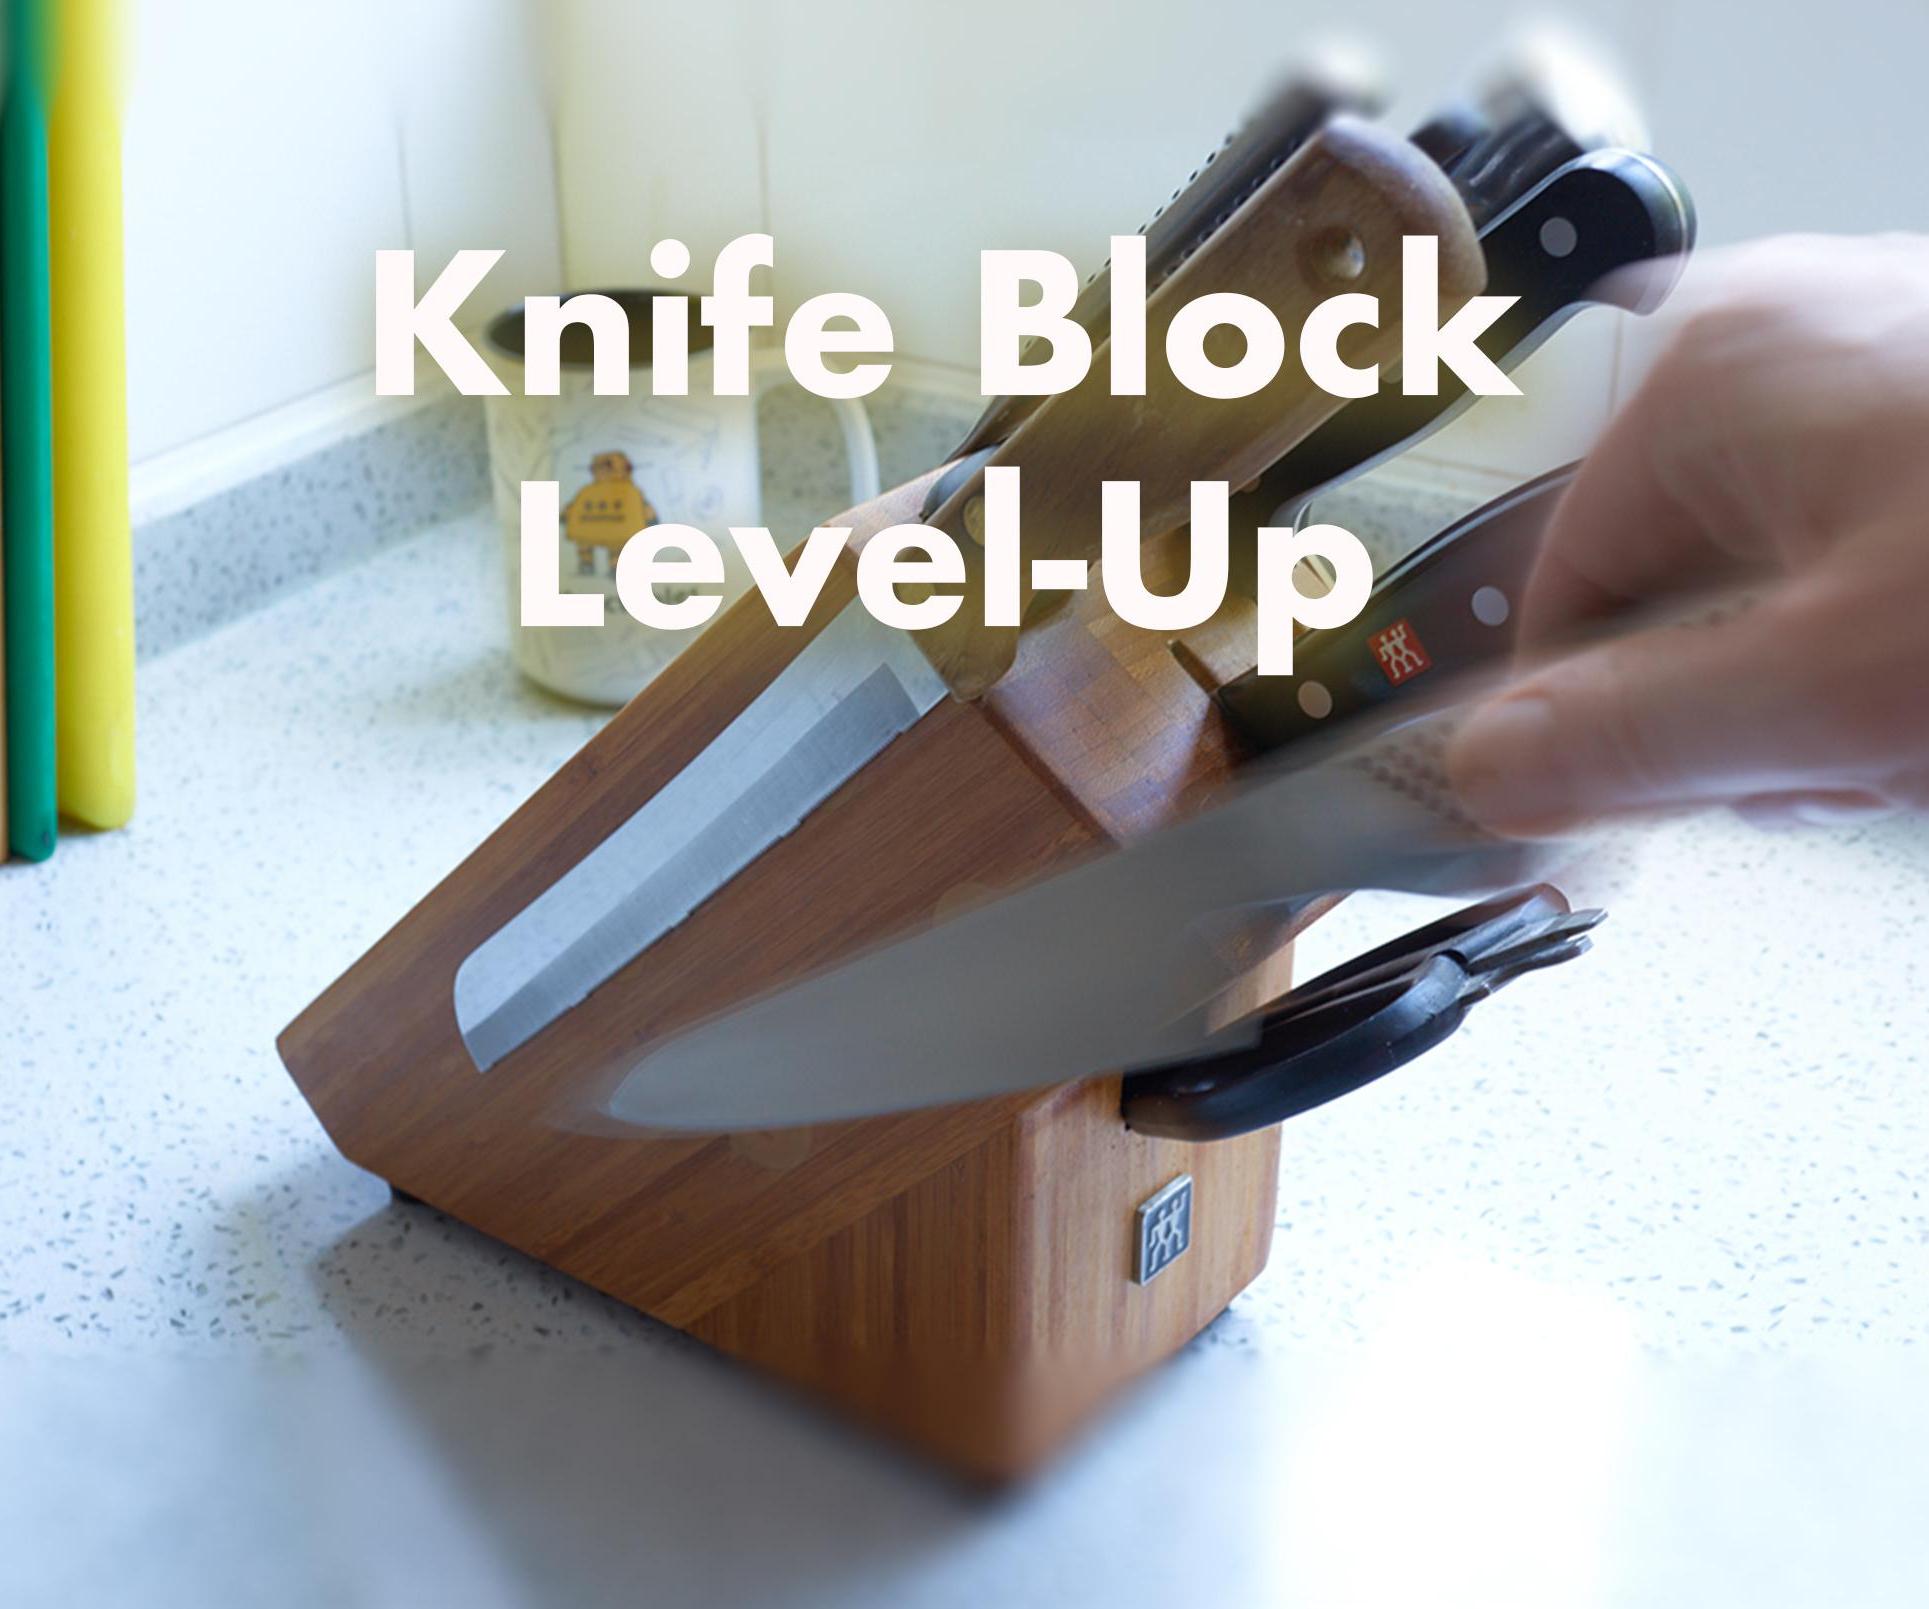 Knife Block - Level Up!